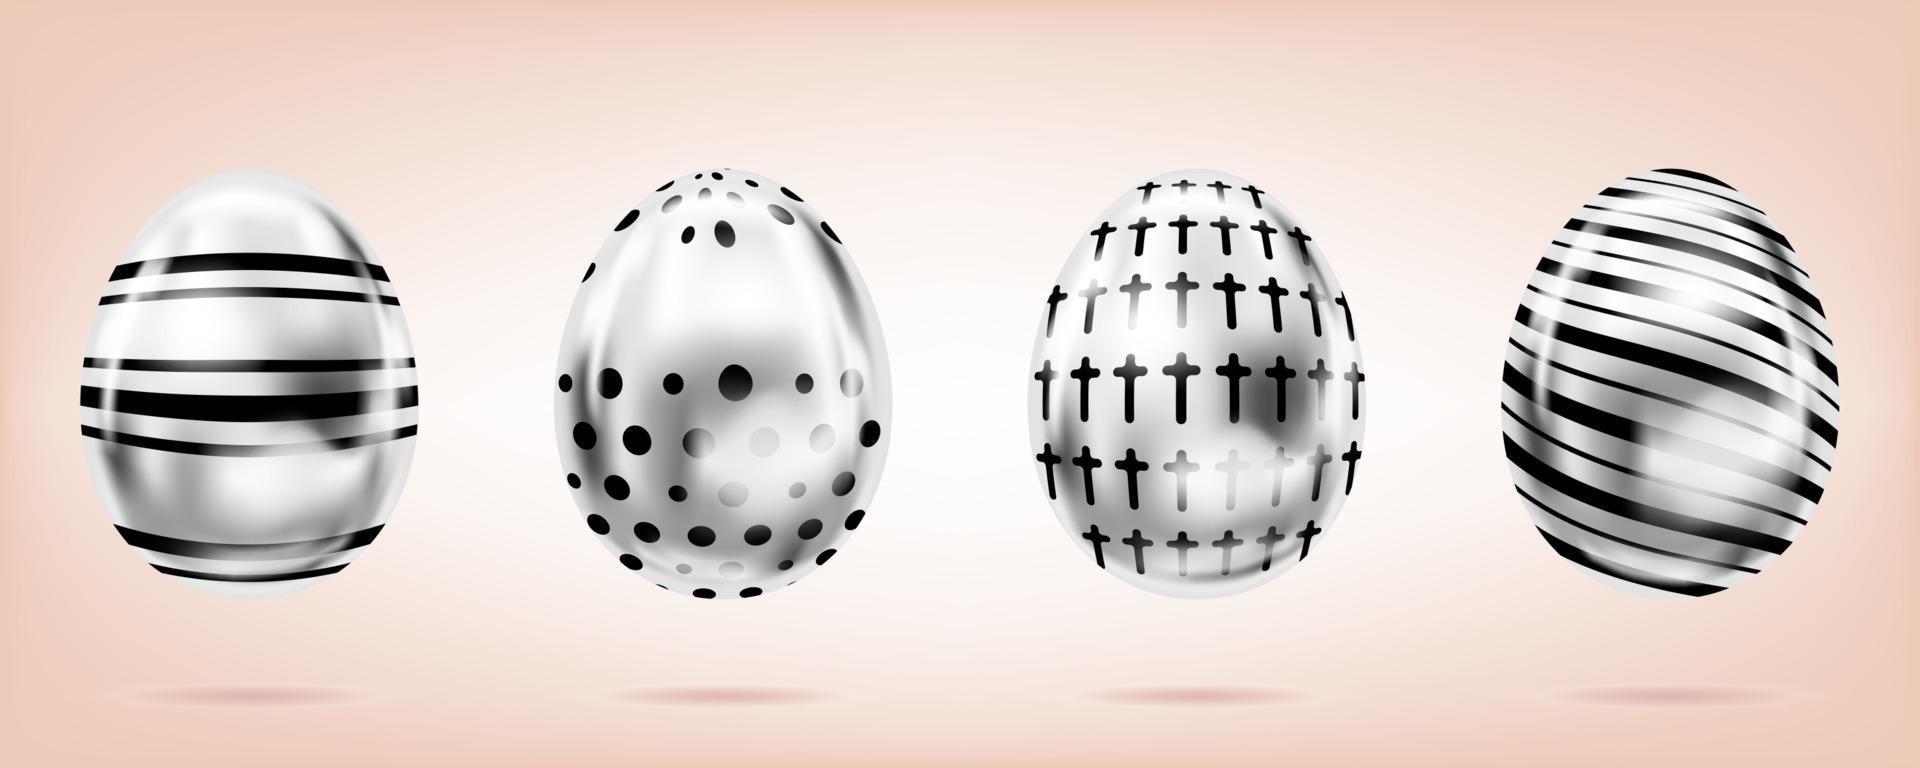 quattro uova d'argento sullo sfondo rosa. oggetti isolati per la decorazione di pasqua. croce, punti e strisce ornate vettore